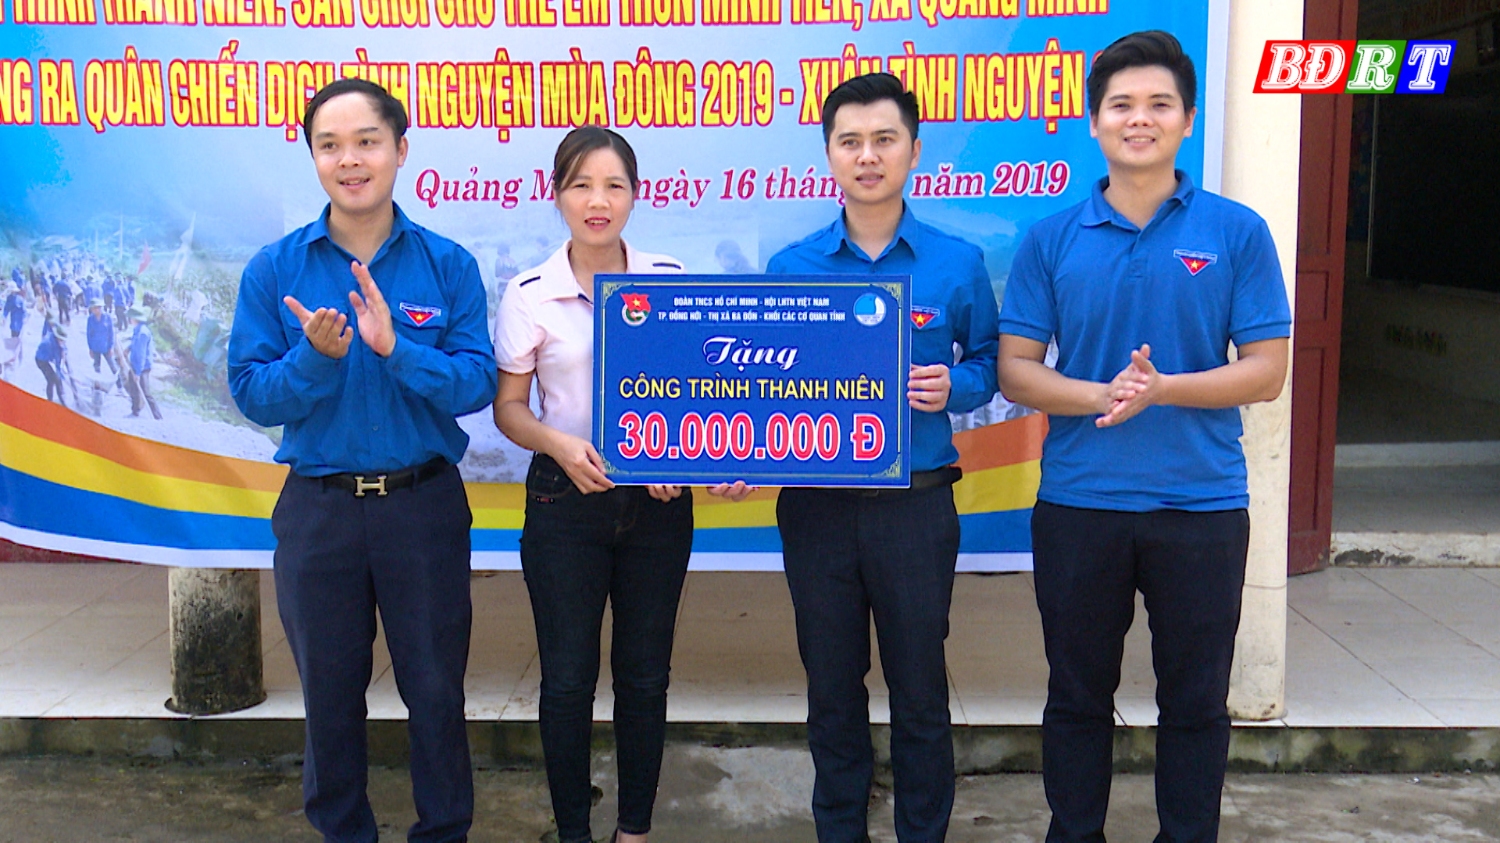 Thị đoàn Ba Đồn phối hợp với Thành đoàn Đồng Hới trao tặng công trình sân chơi trẻ em tại thôn Minh Tiến, xã Quảng Minh.